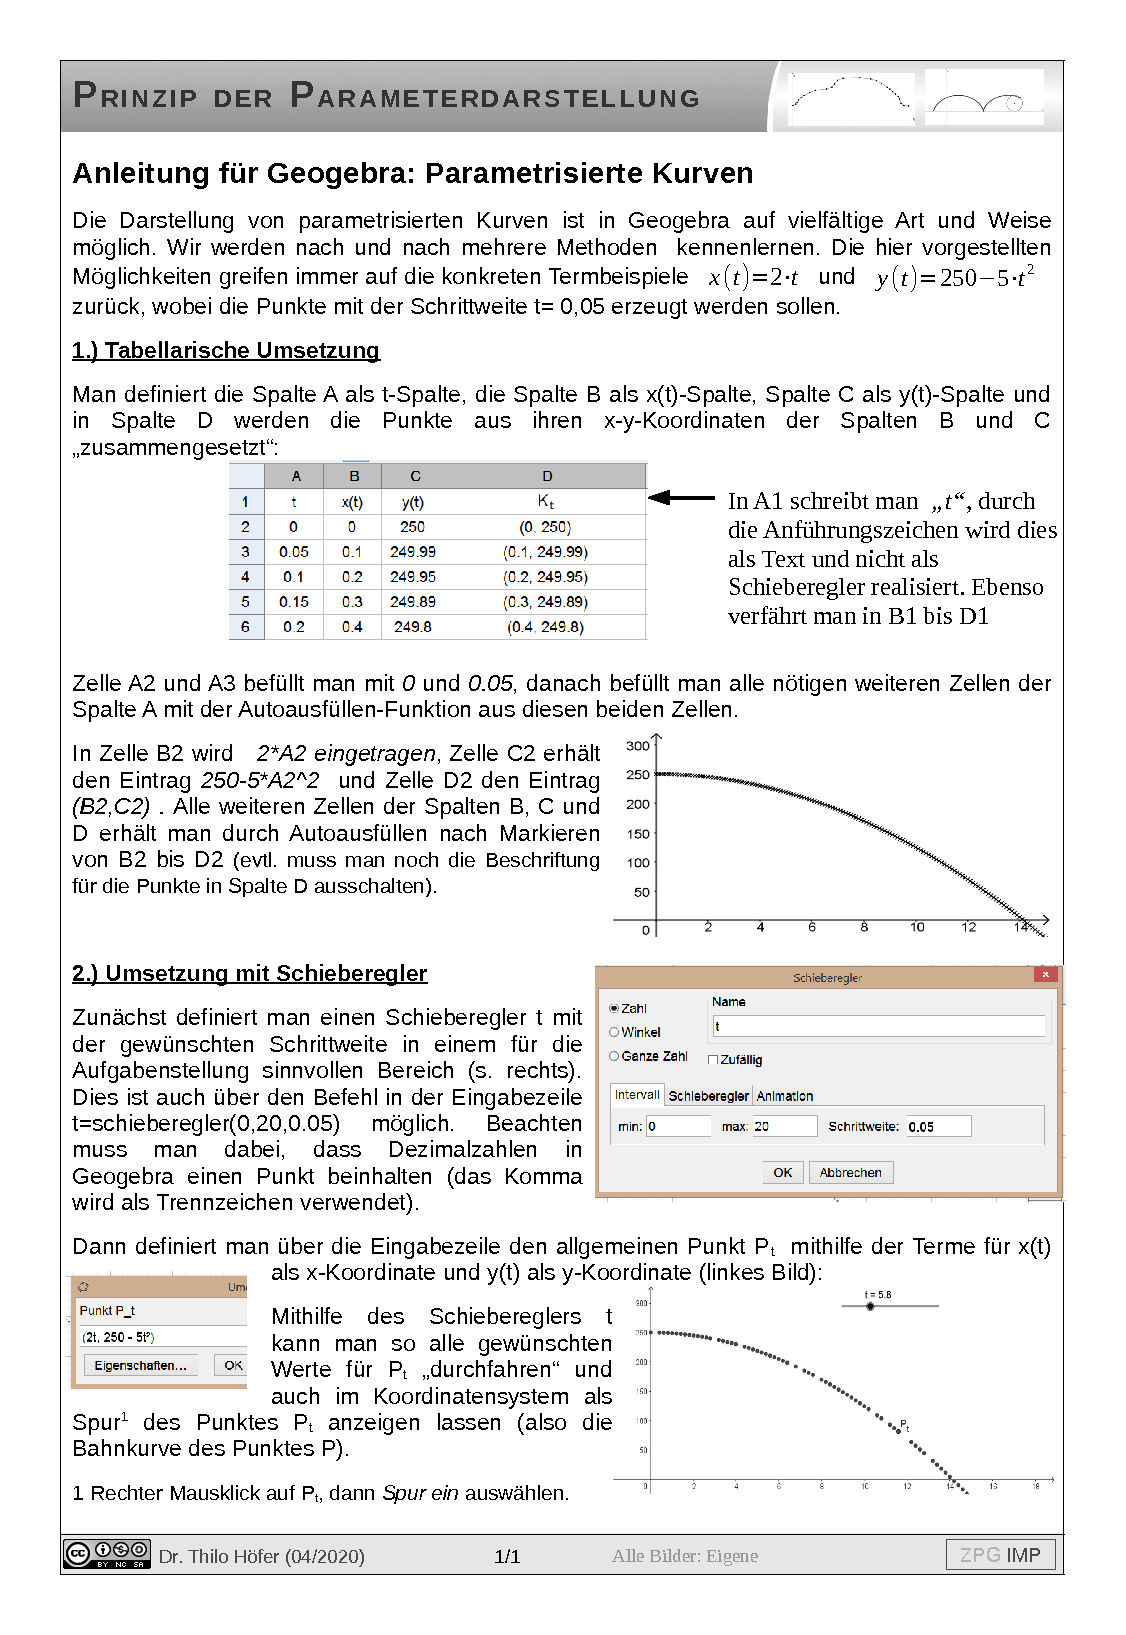 05a_fis_parameterdarstellung-geogebra-anleitung.pdf